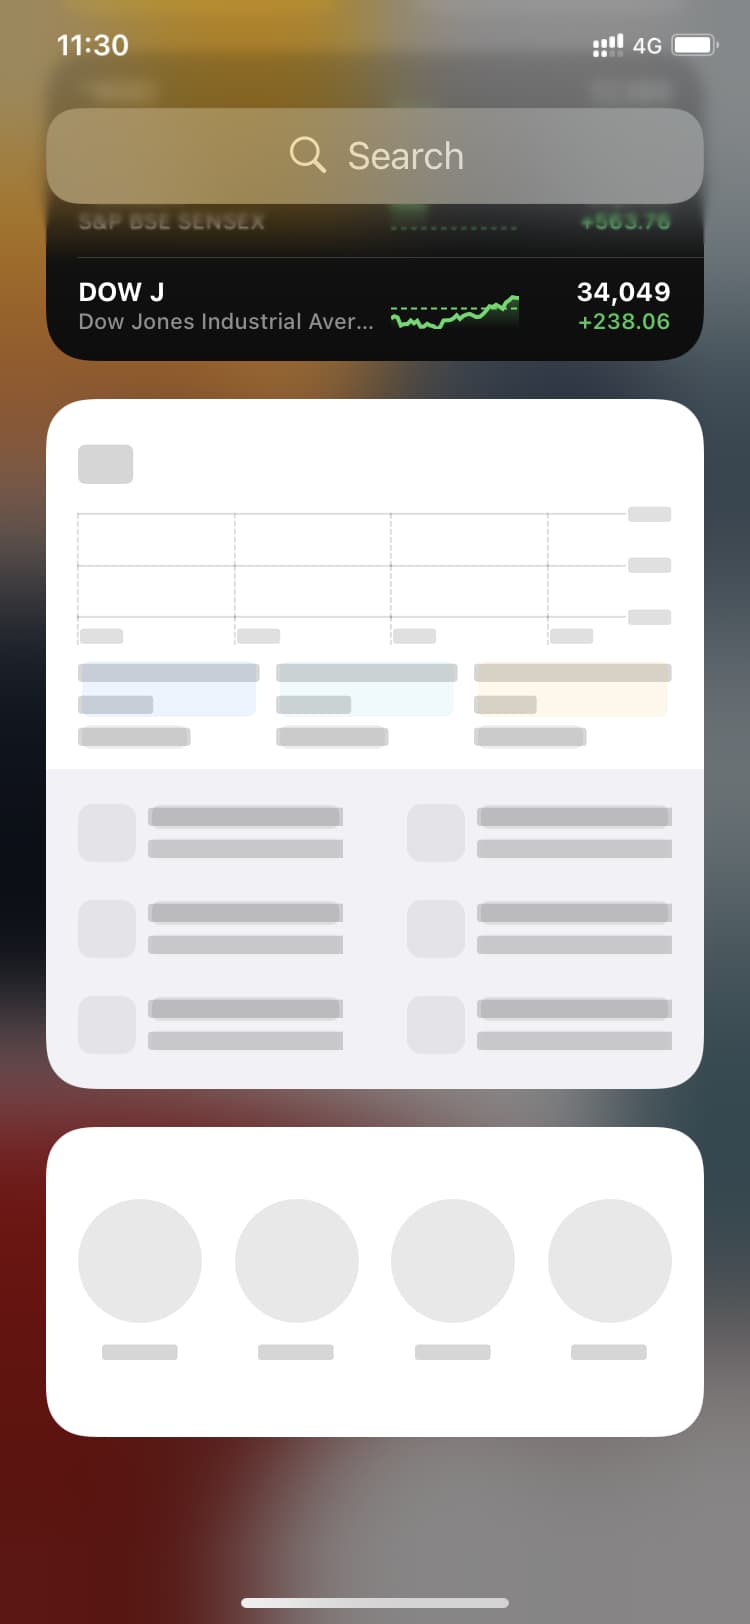 Les widgets ne fonctionnent pas sur l'écran de verrouillage de l'iPhone